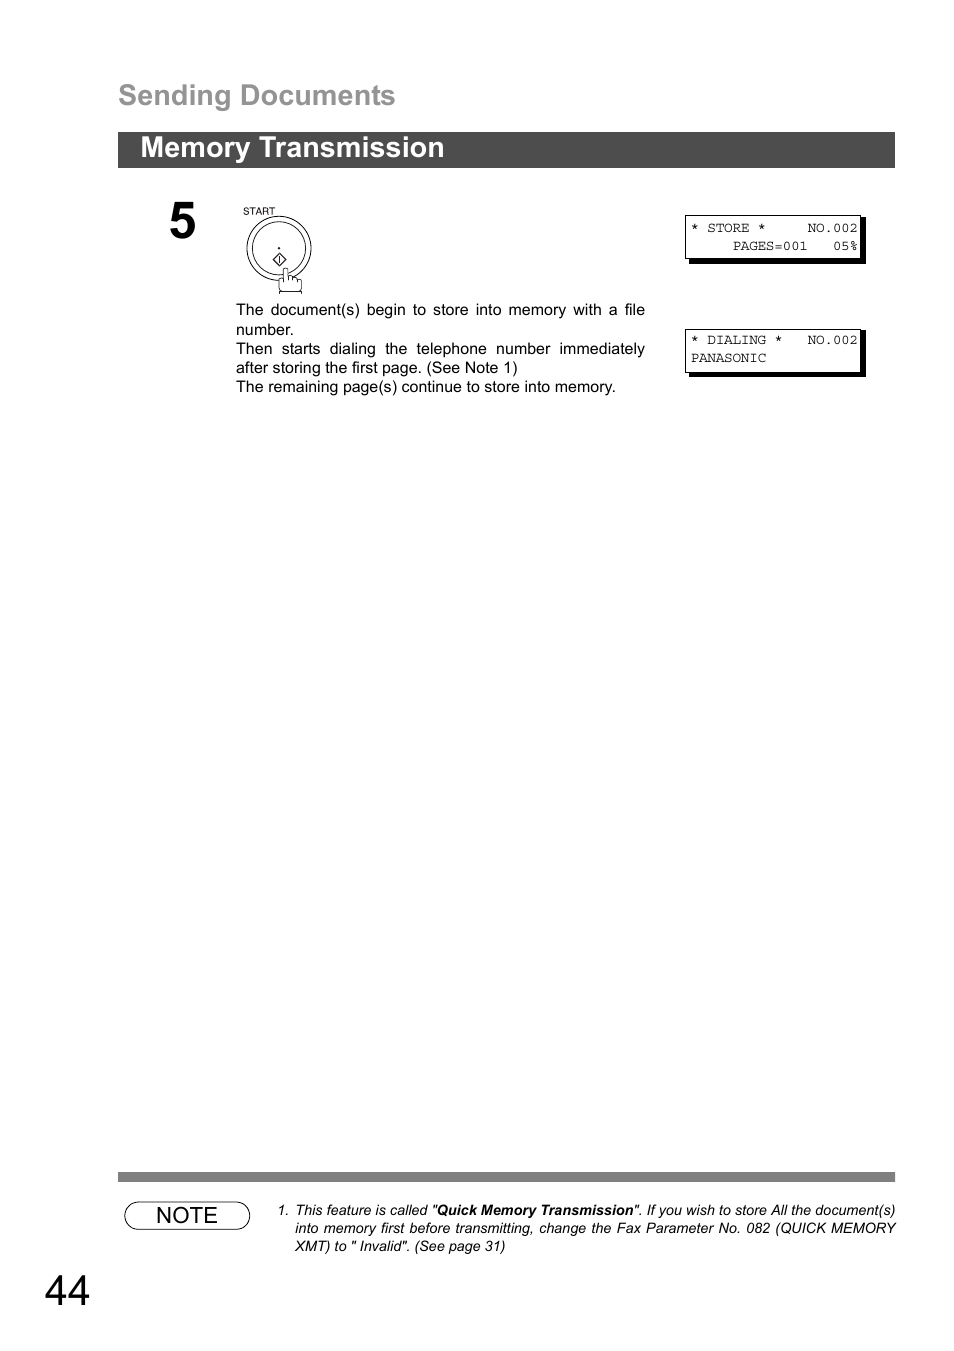 Sending documents | Panasonic DP-1810F Manuel d'utilisation | Page 44 / 158